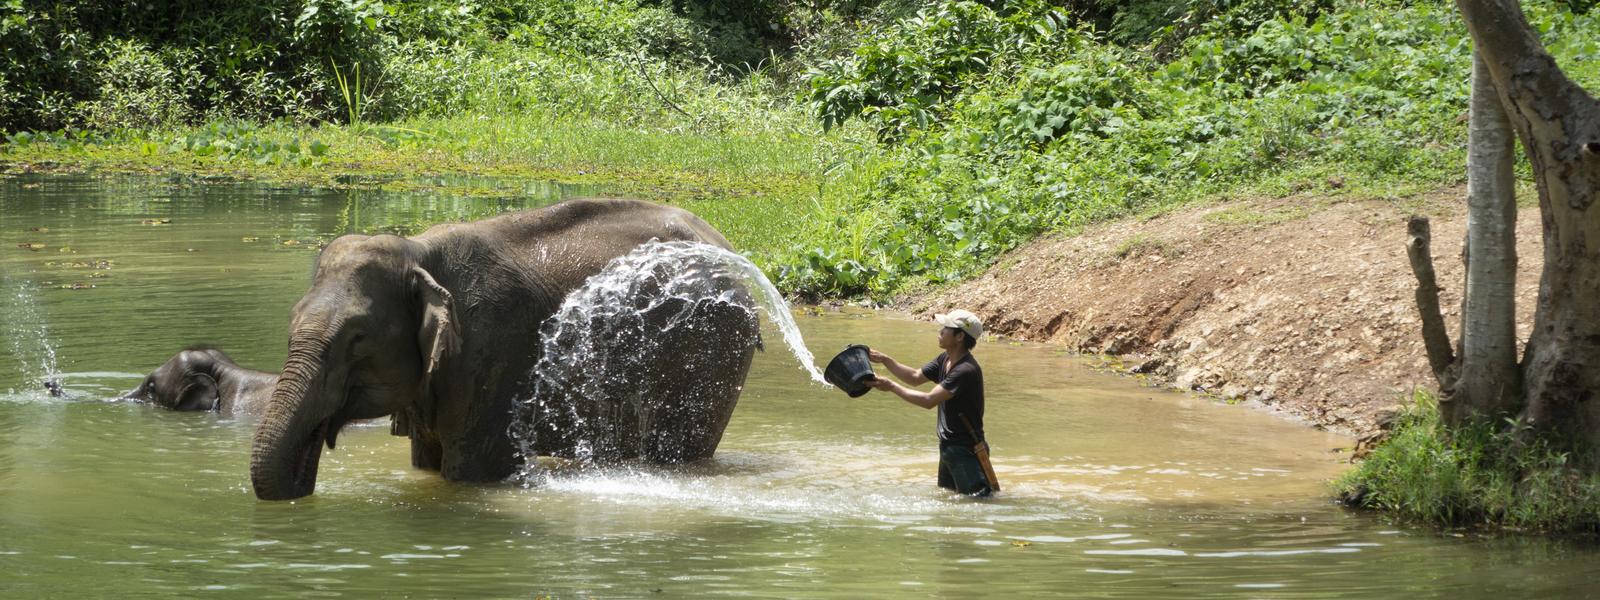 Elepant in laos